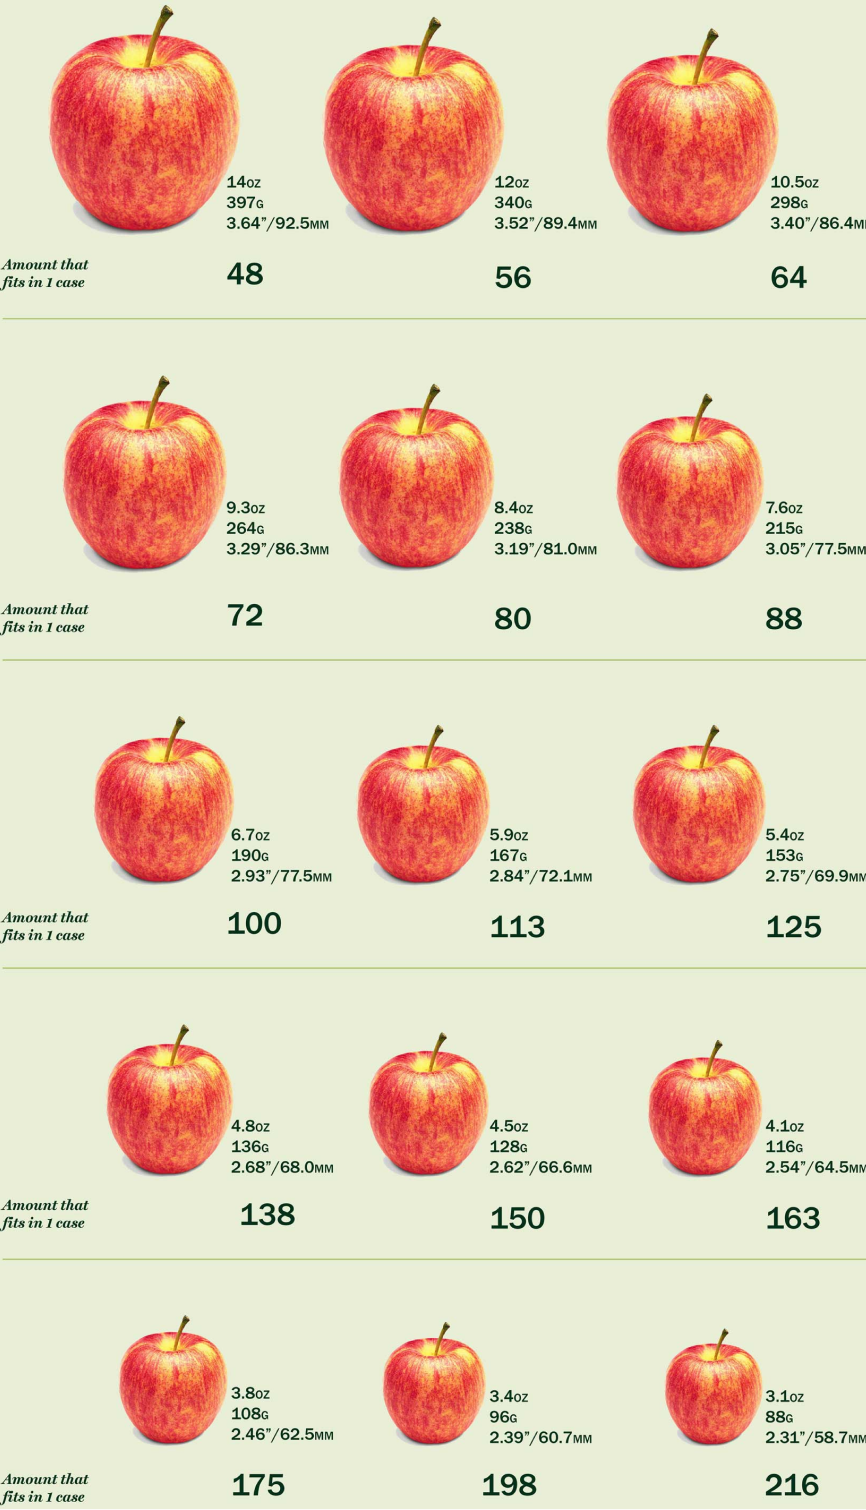 一张图显示了从 15 到 216 的 48 种标准苹果尺寸。